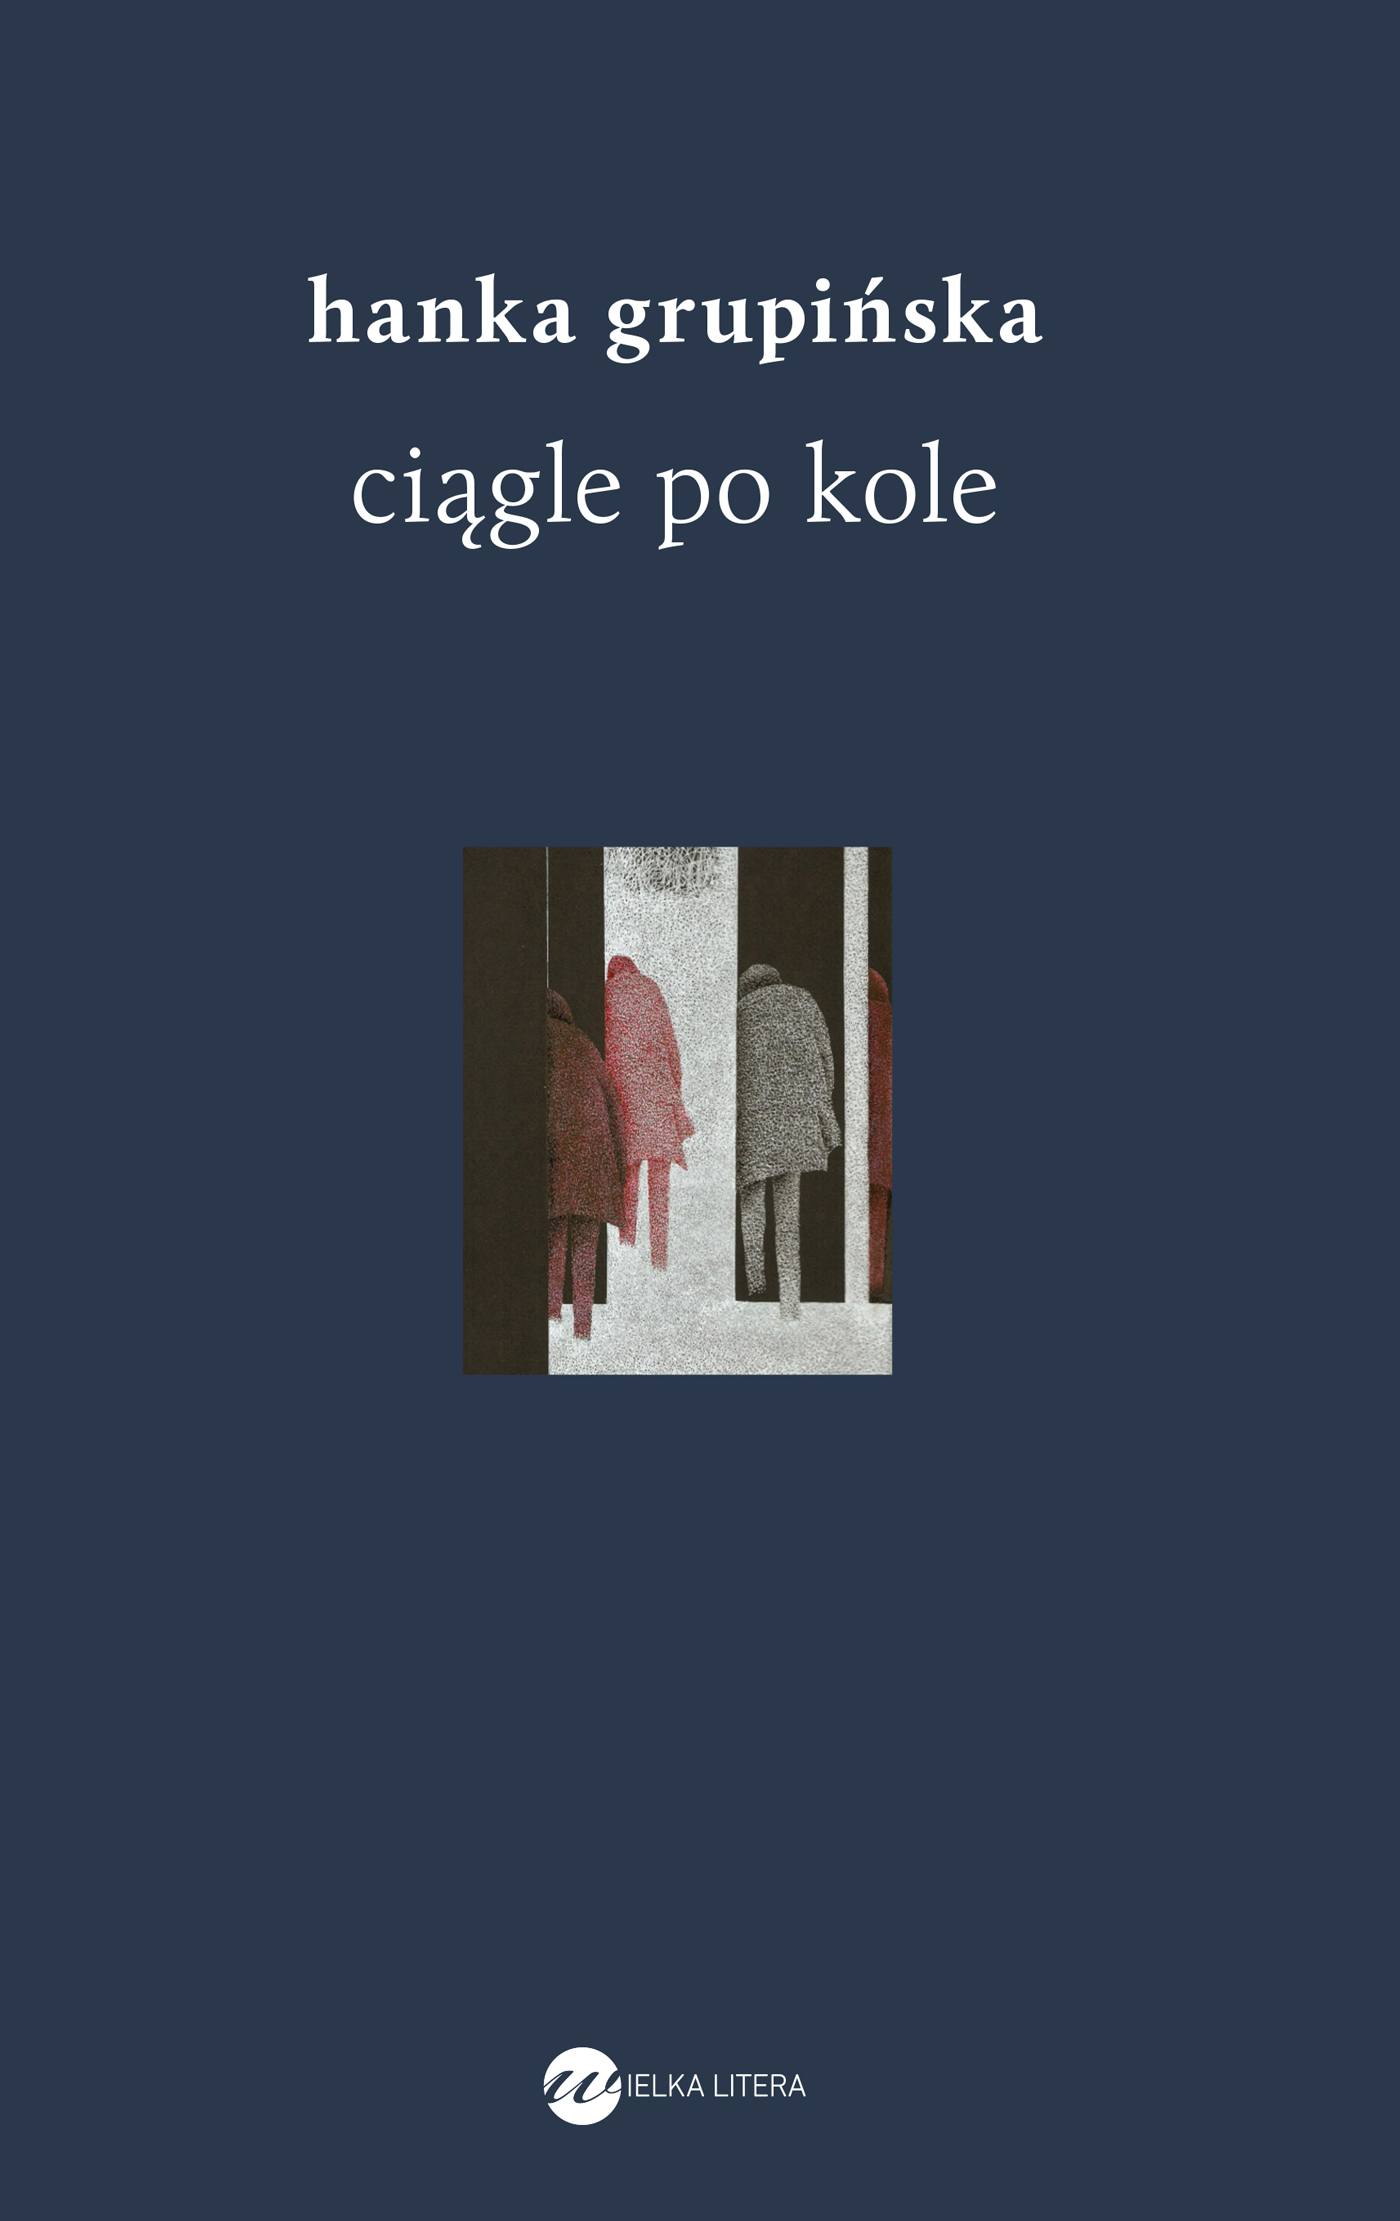 Okładka książki Hanki Grupińskiej "Ciągle po kole". Jest w kolorze granatowym, w środku symboliczny obrazek.